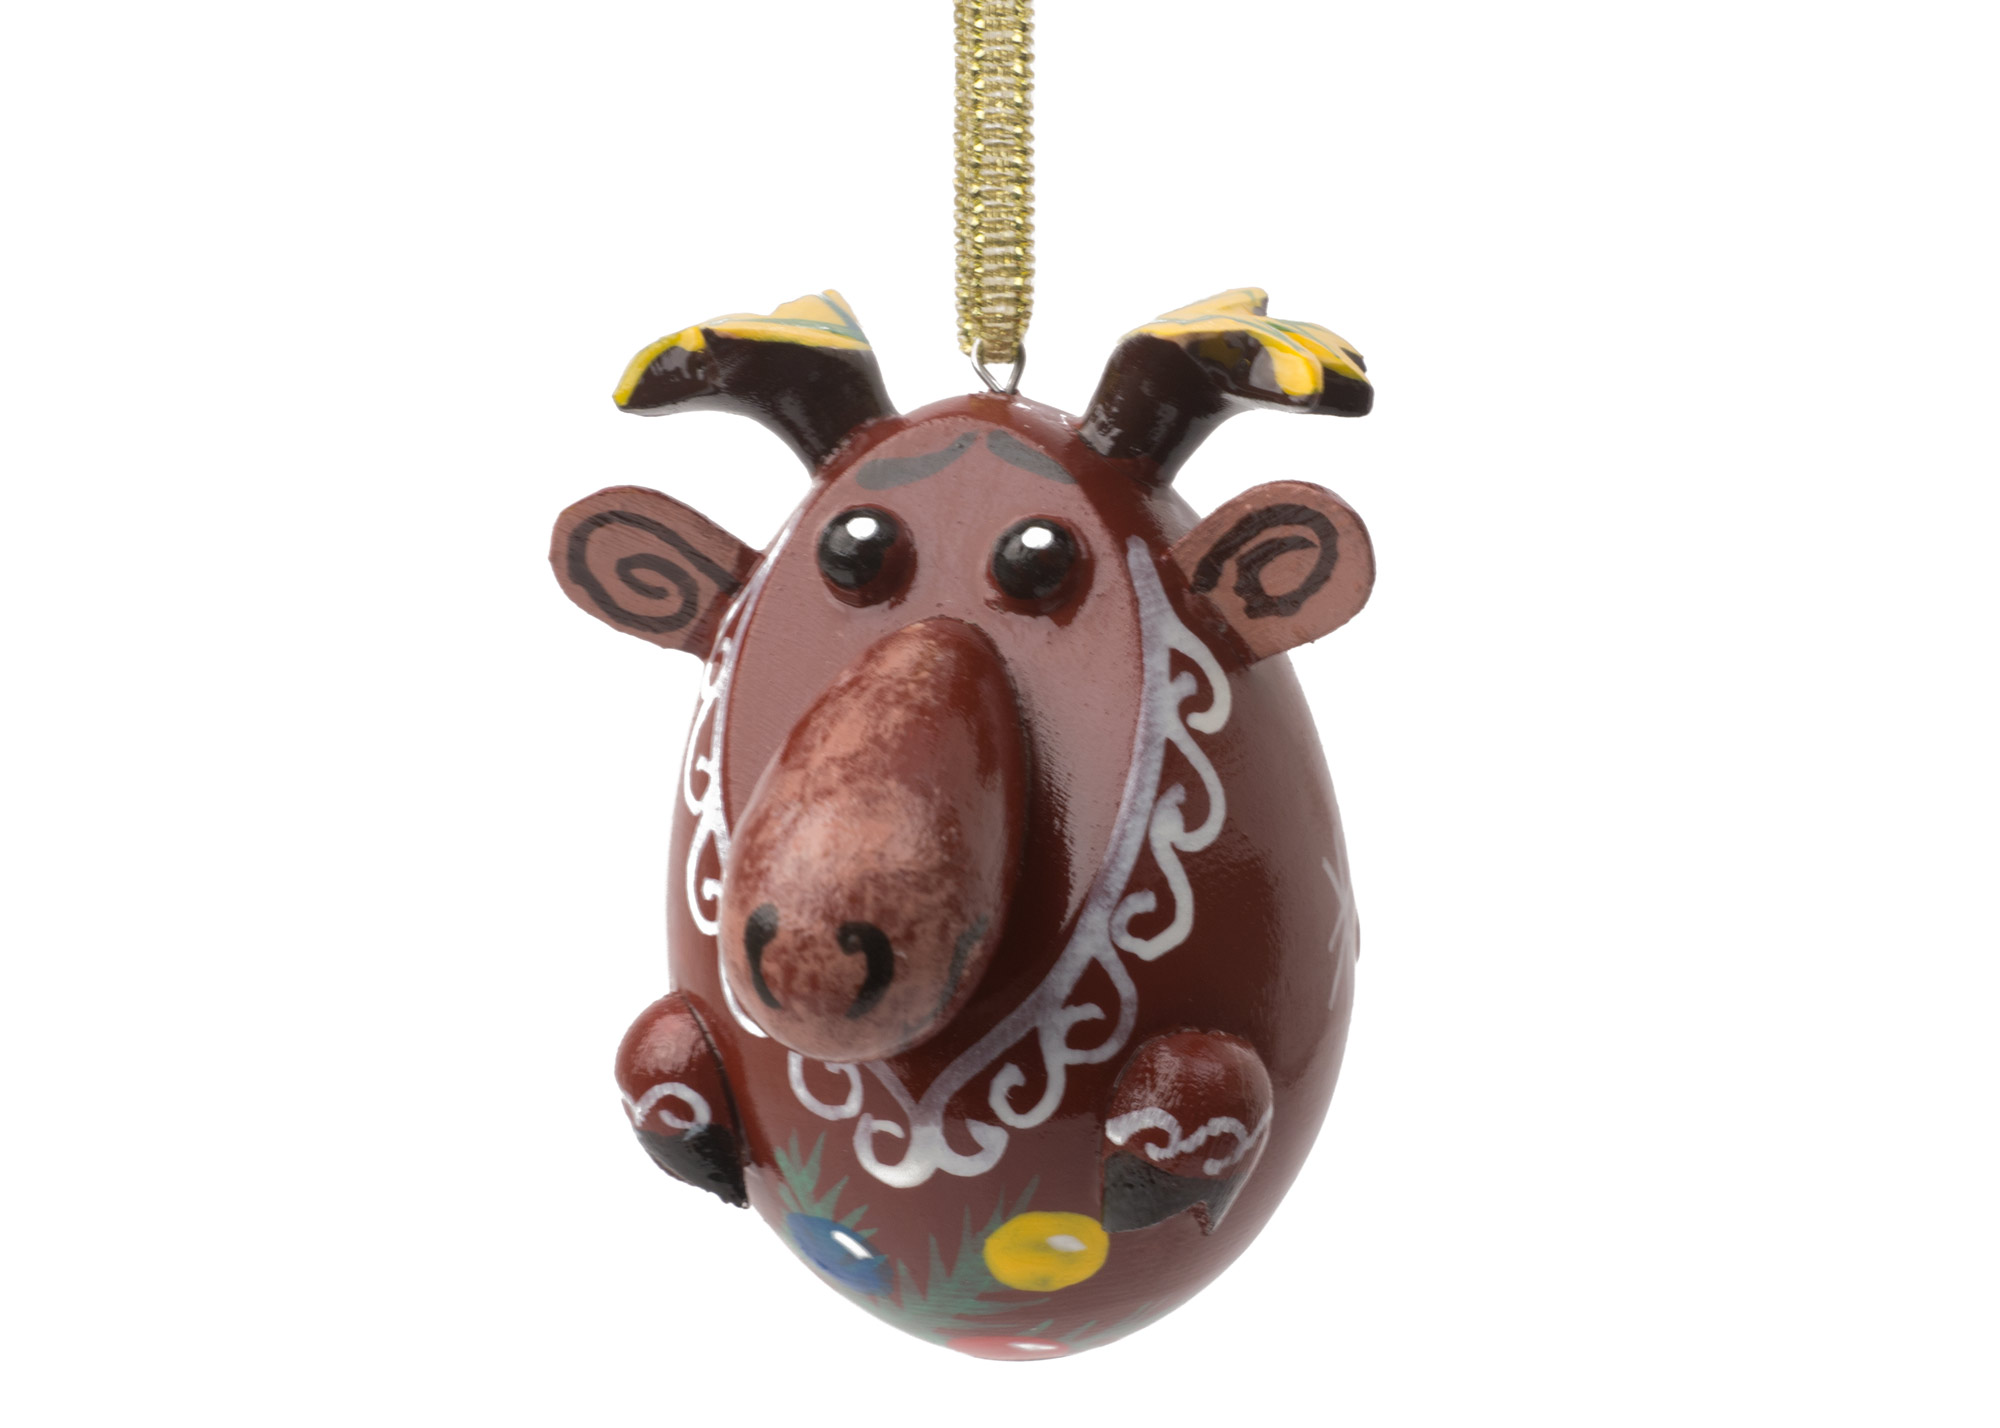 Buy Moose Ornament 2" at GoldenCockerel.com